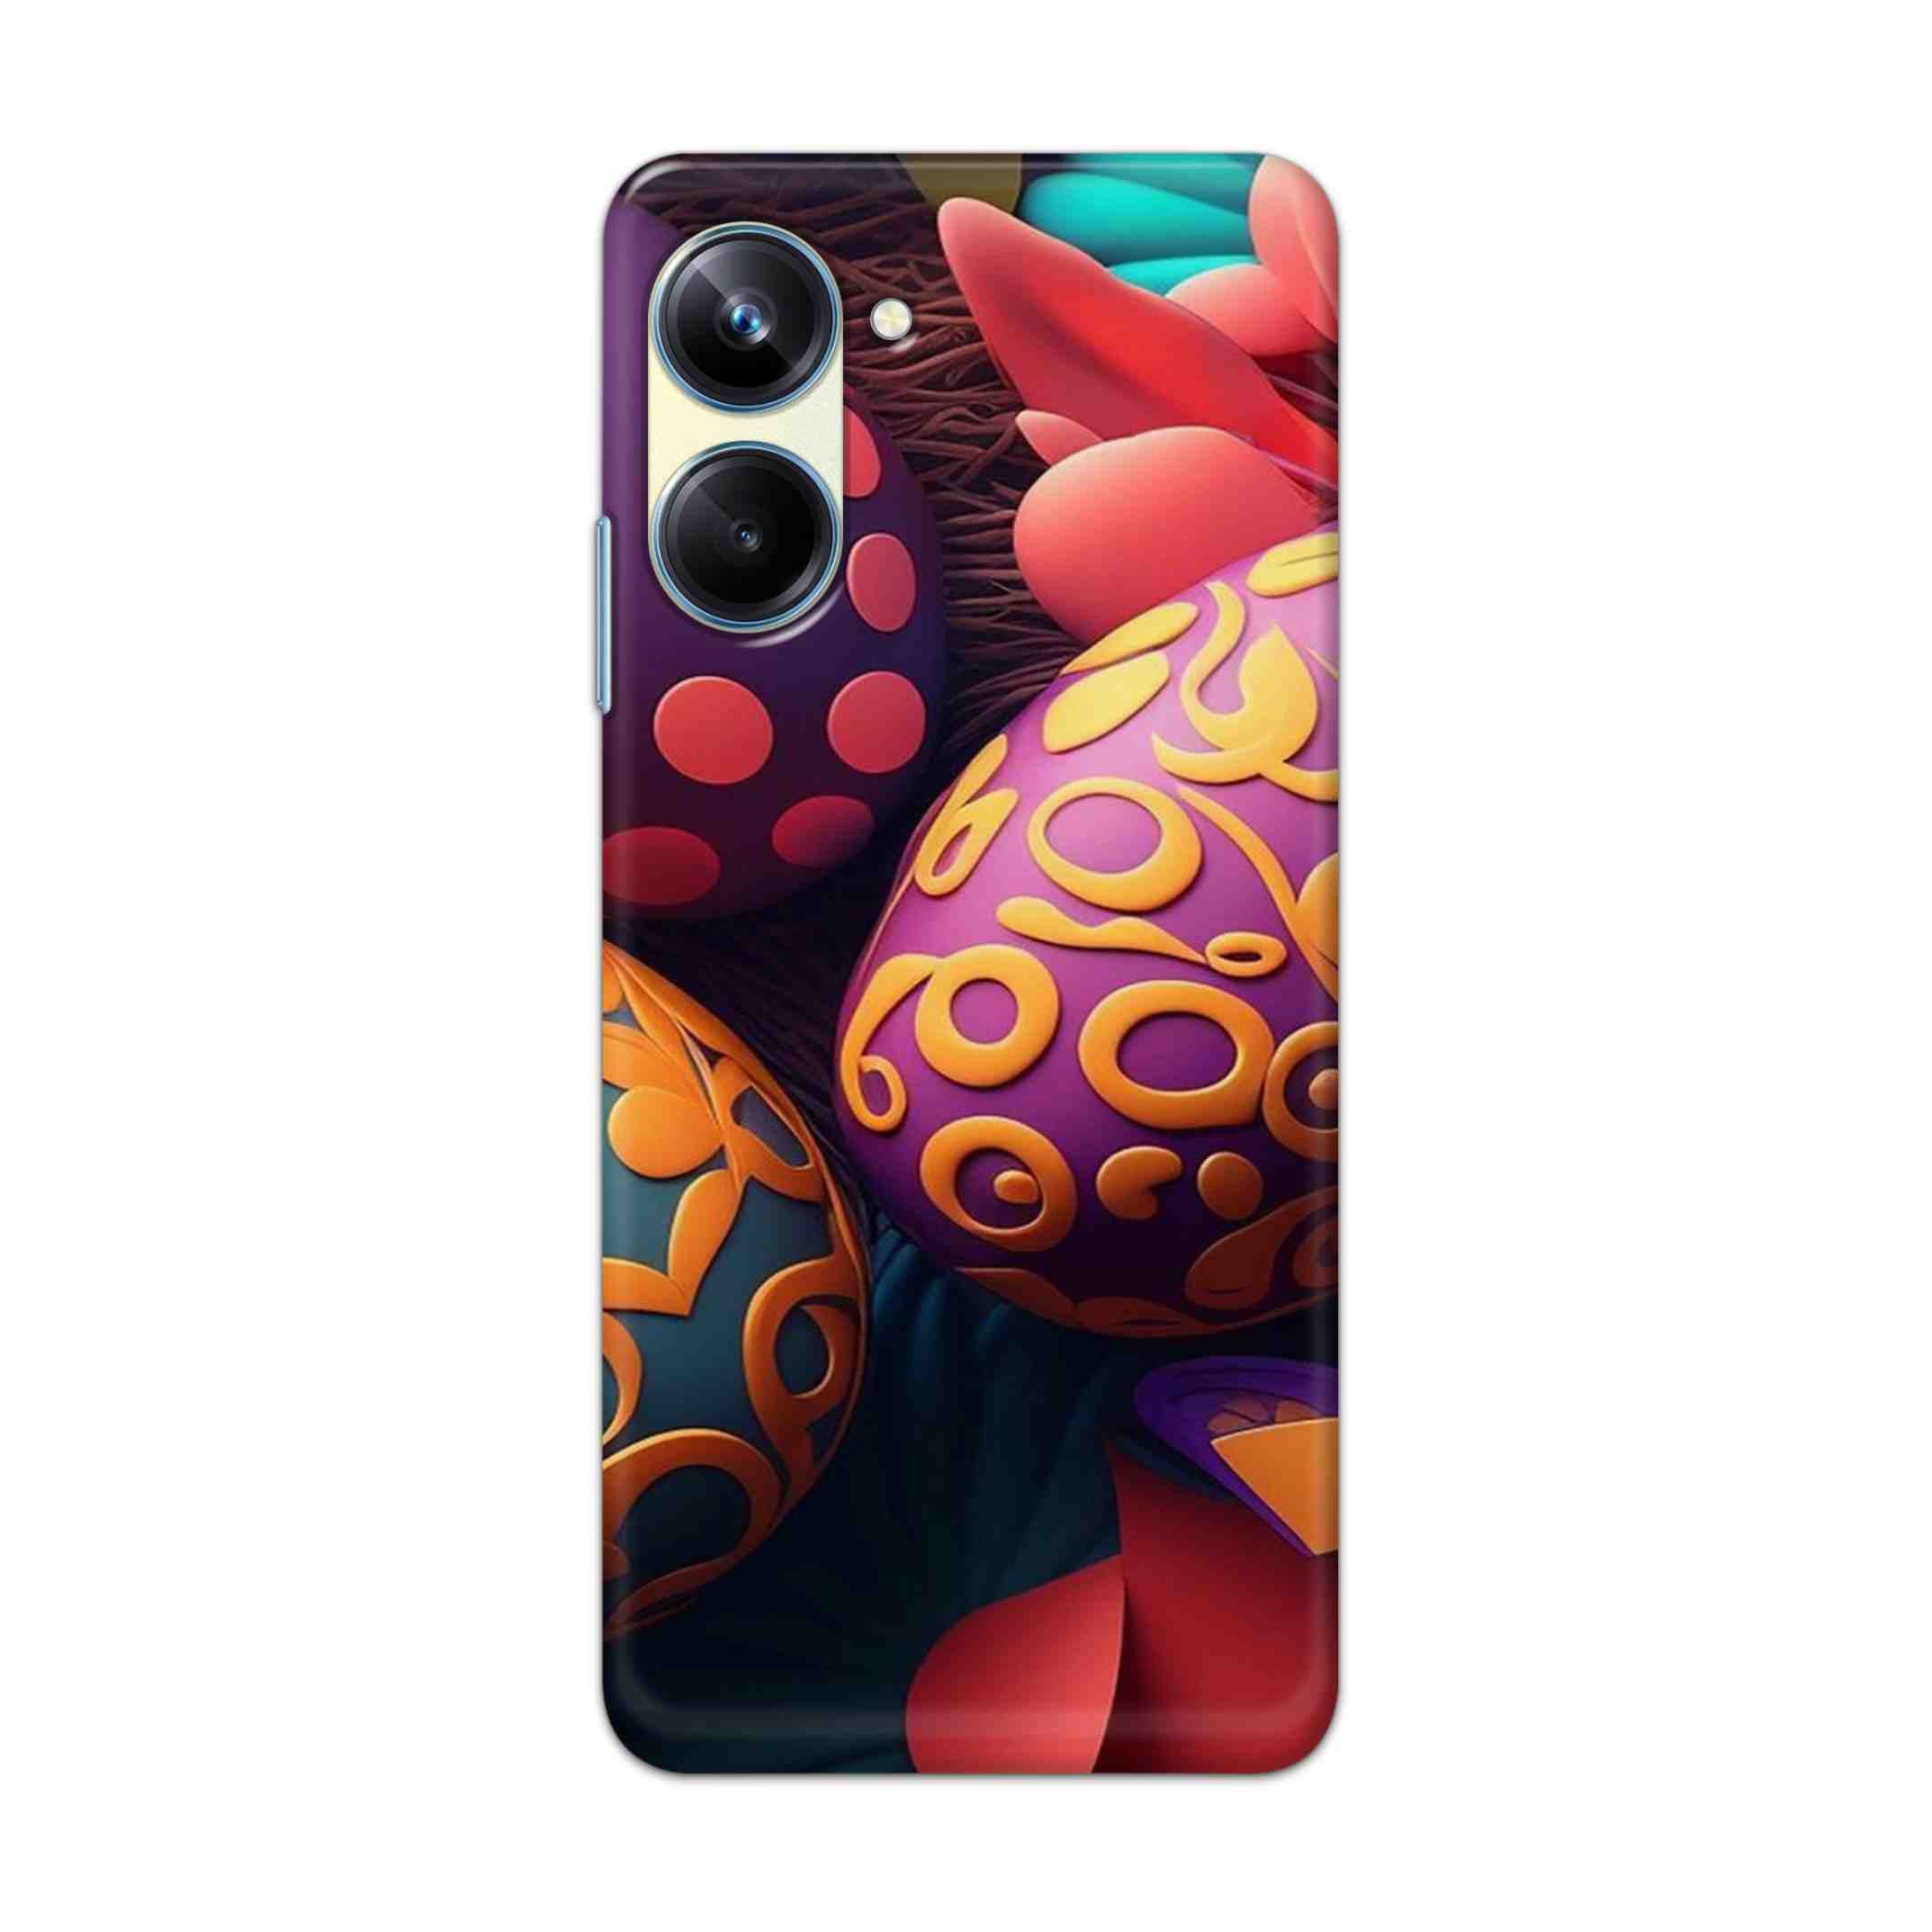 Buy Easter Egg Hard Back Mobile Phone Case Cover For Realme 10 Pro Online